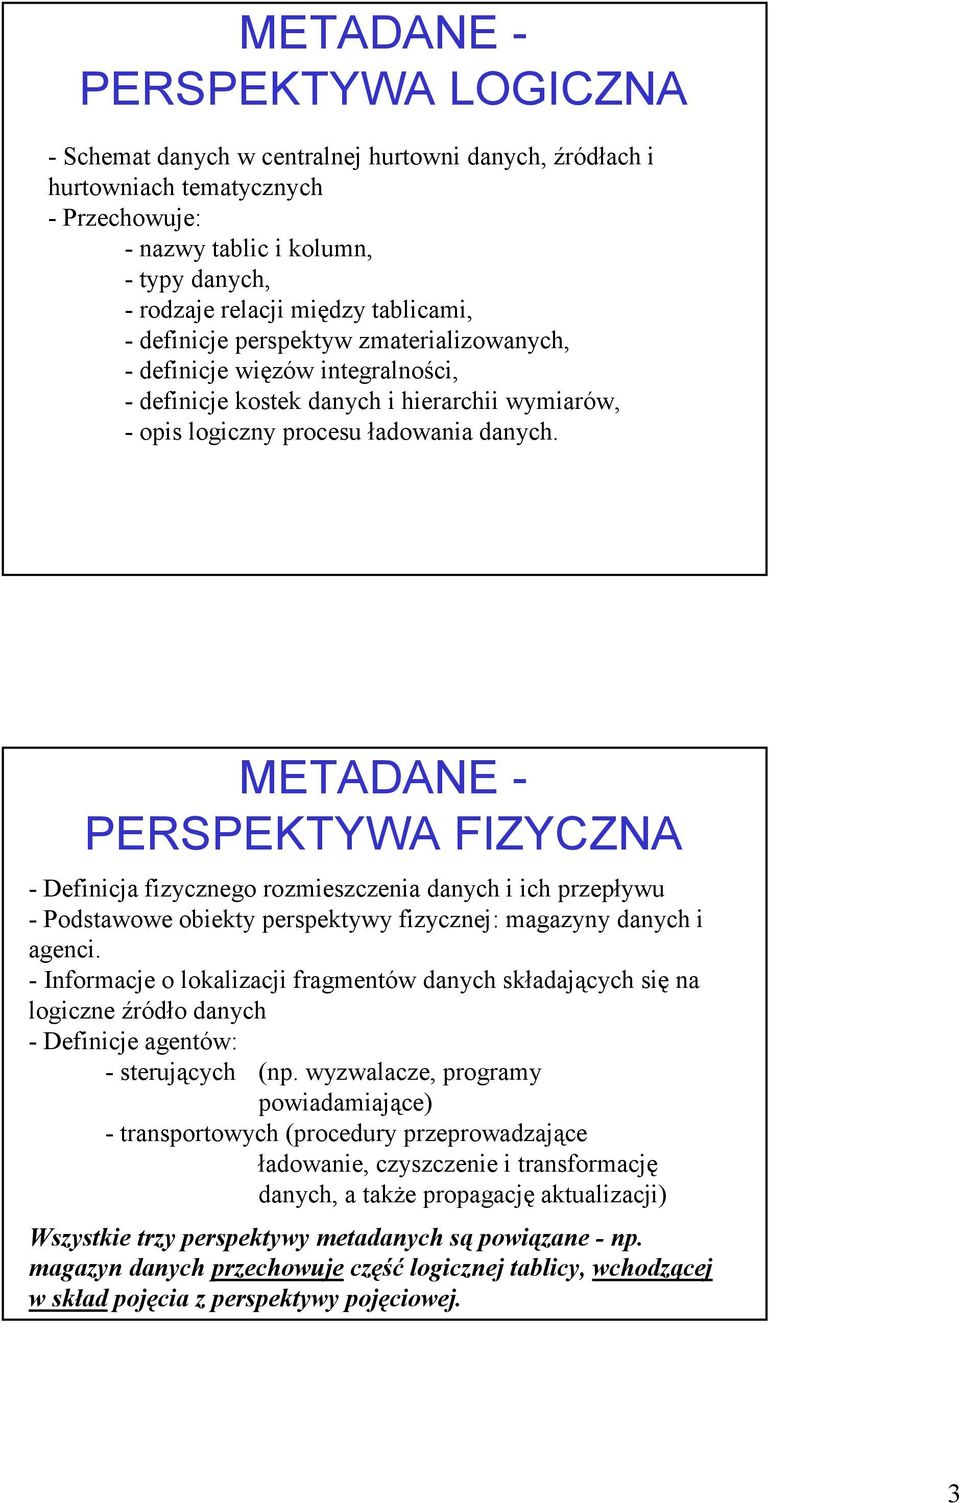 METADANE - PERSPEKTYWA FIZYCZNA - Definicja fizycznego rozmieszczenia danych i ich przepływu - Podstawowe obiekty perspektywy fizycznej: magazyny danych i agenci.